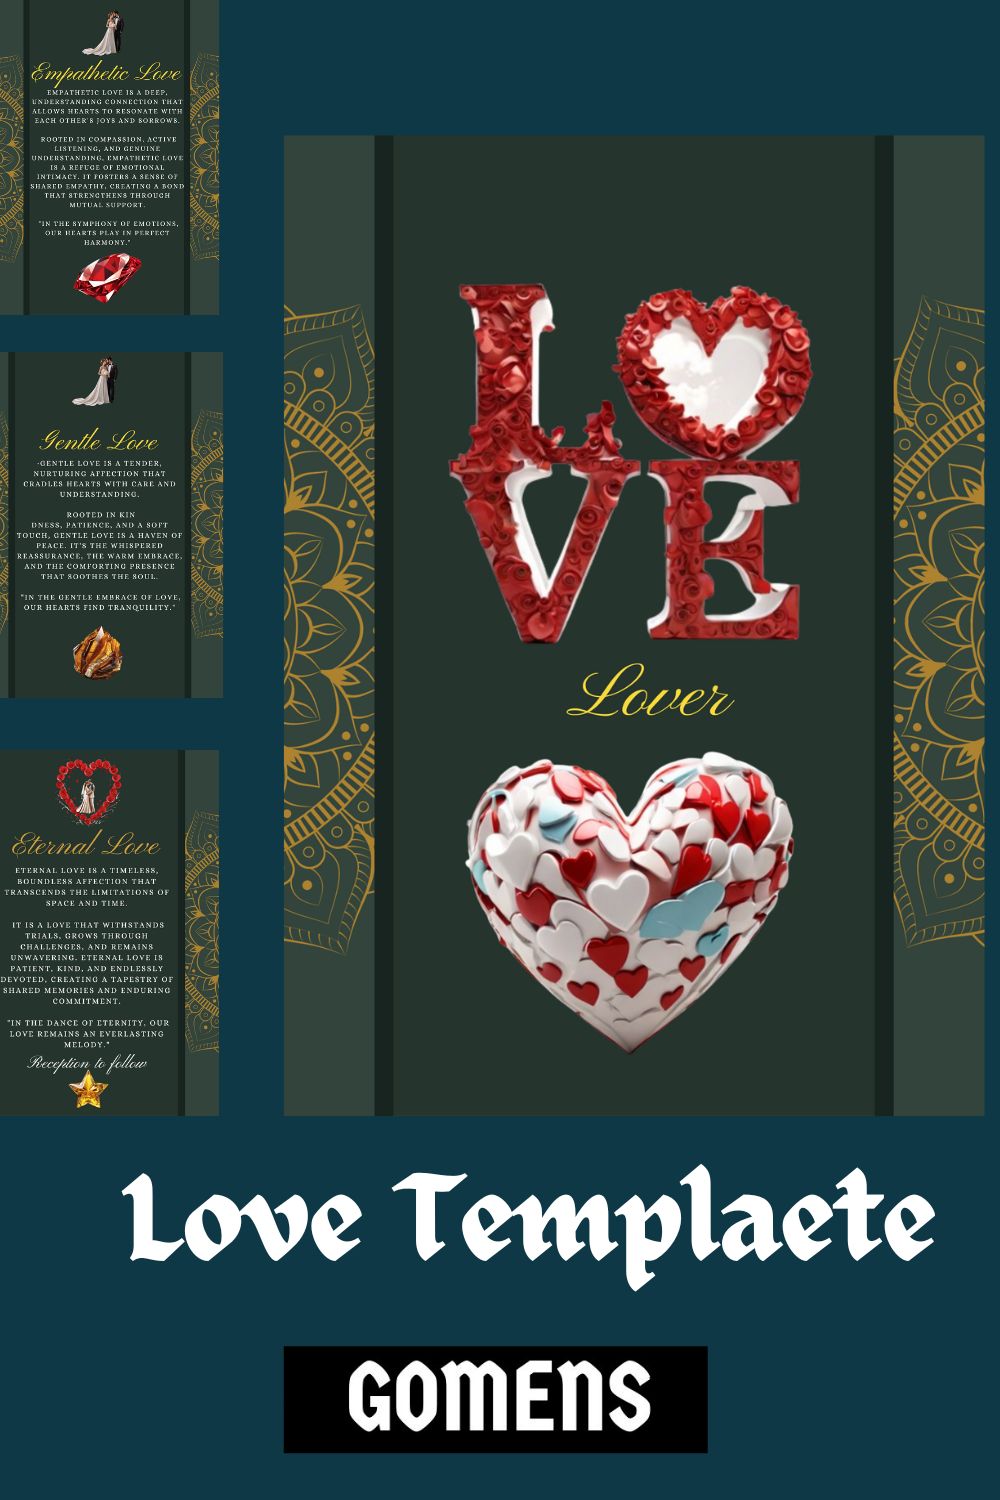 LOVE TEMPLATE LATEST DESIGN / UNIQUE PATTERN MASTER BUNDLE pinterest preview image.